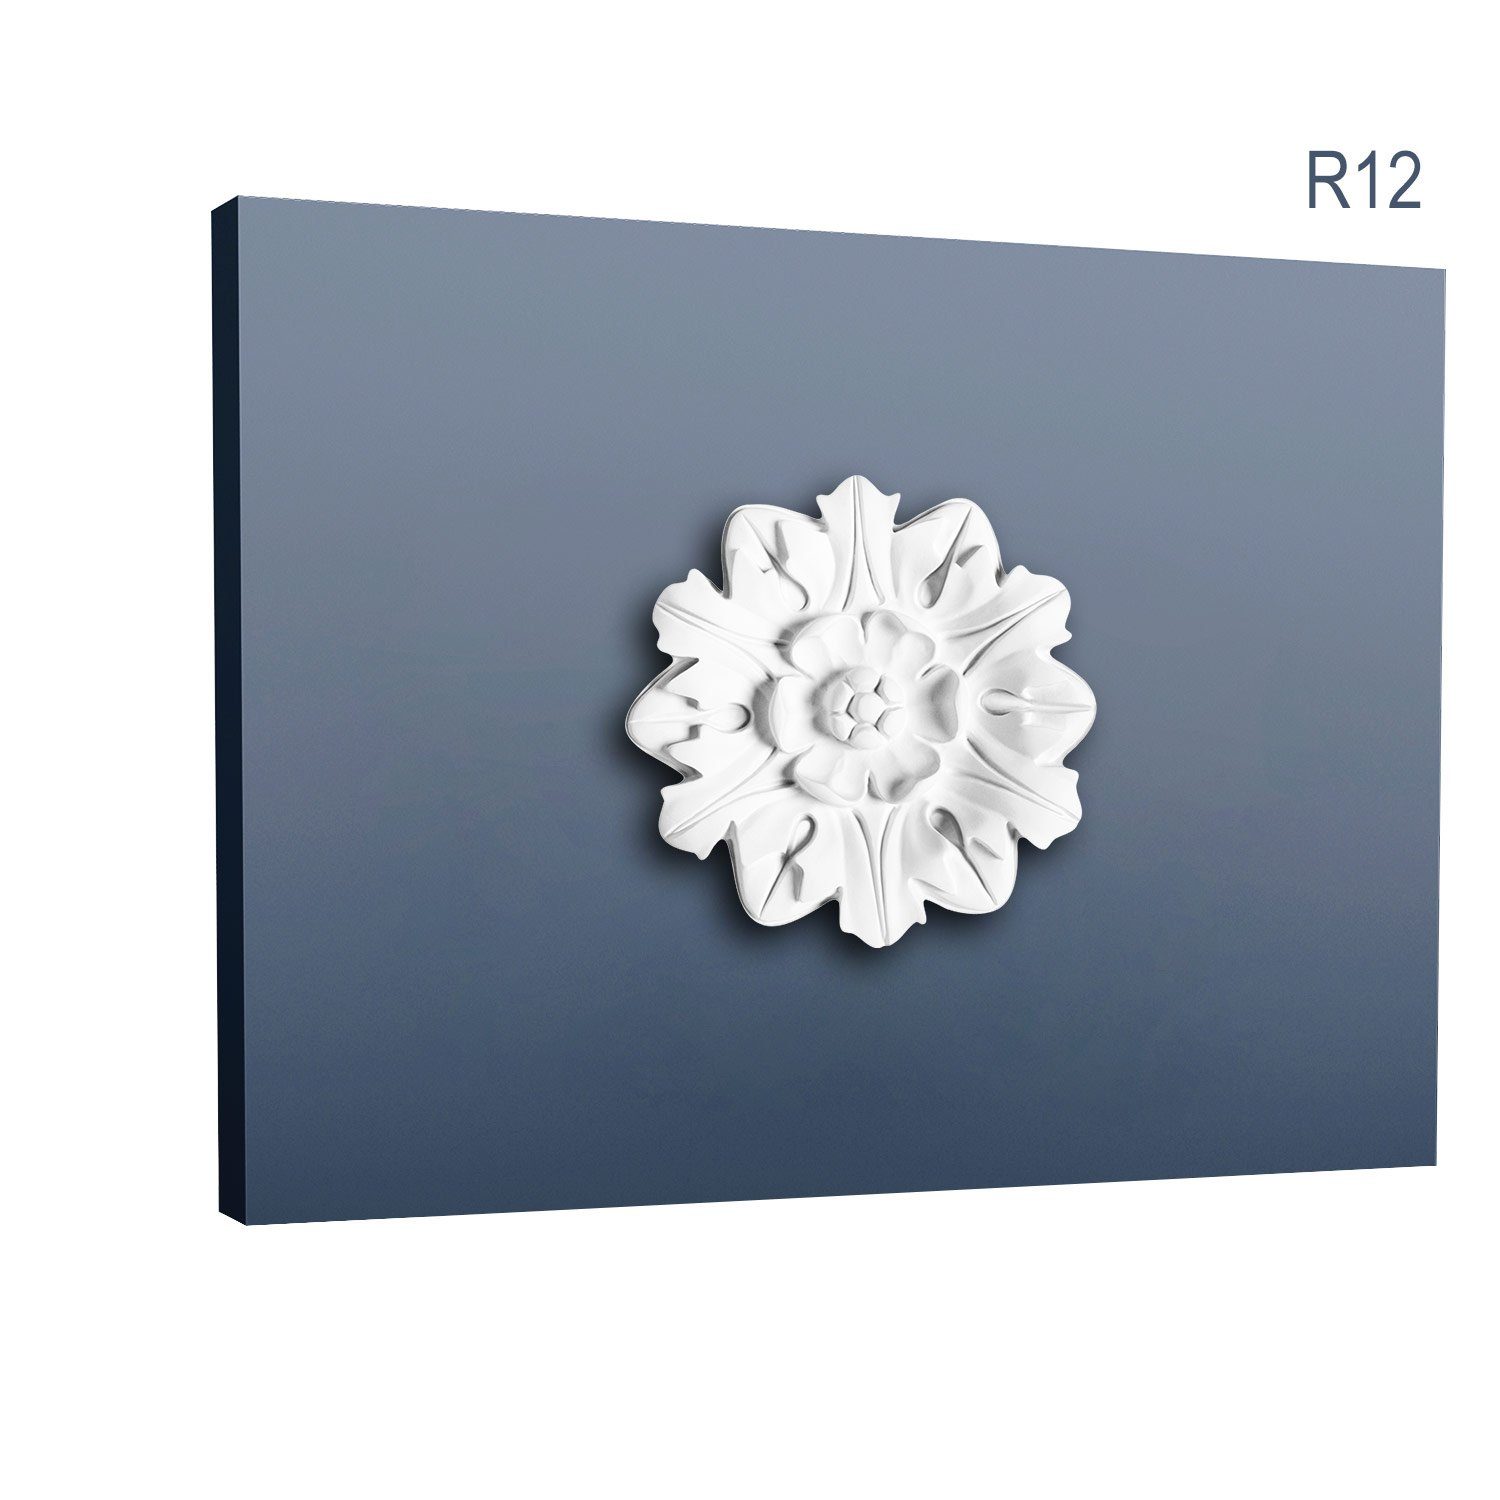 Orac Decor Decken-Rosette R12 (Rosette, 1 St., Deckenrosette, Medallion, Stuckrosette, Deckenelement, Zierelement, Durchmesser 19 cm), weiß, vorgrundiert, Stil: Neo-Renaissance